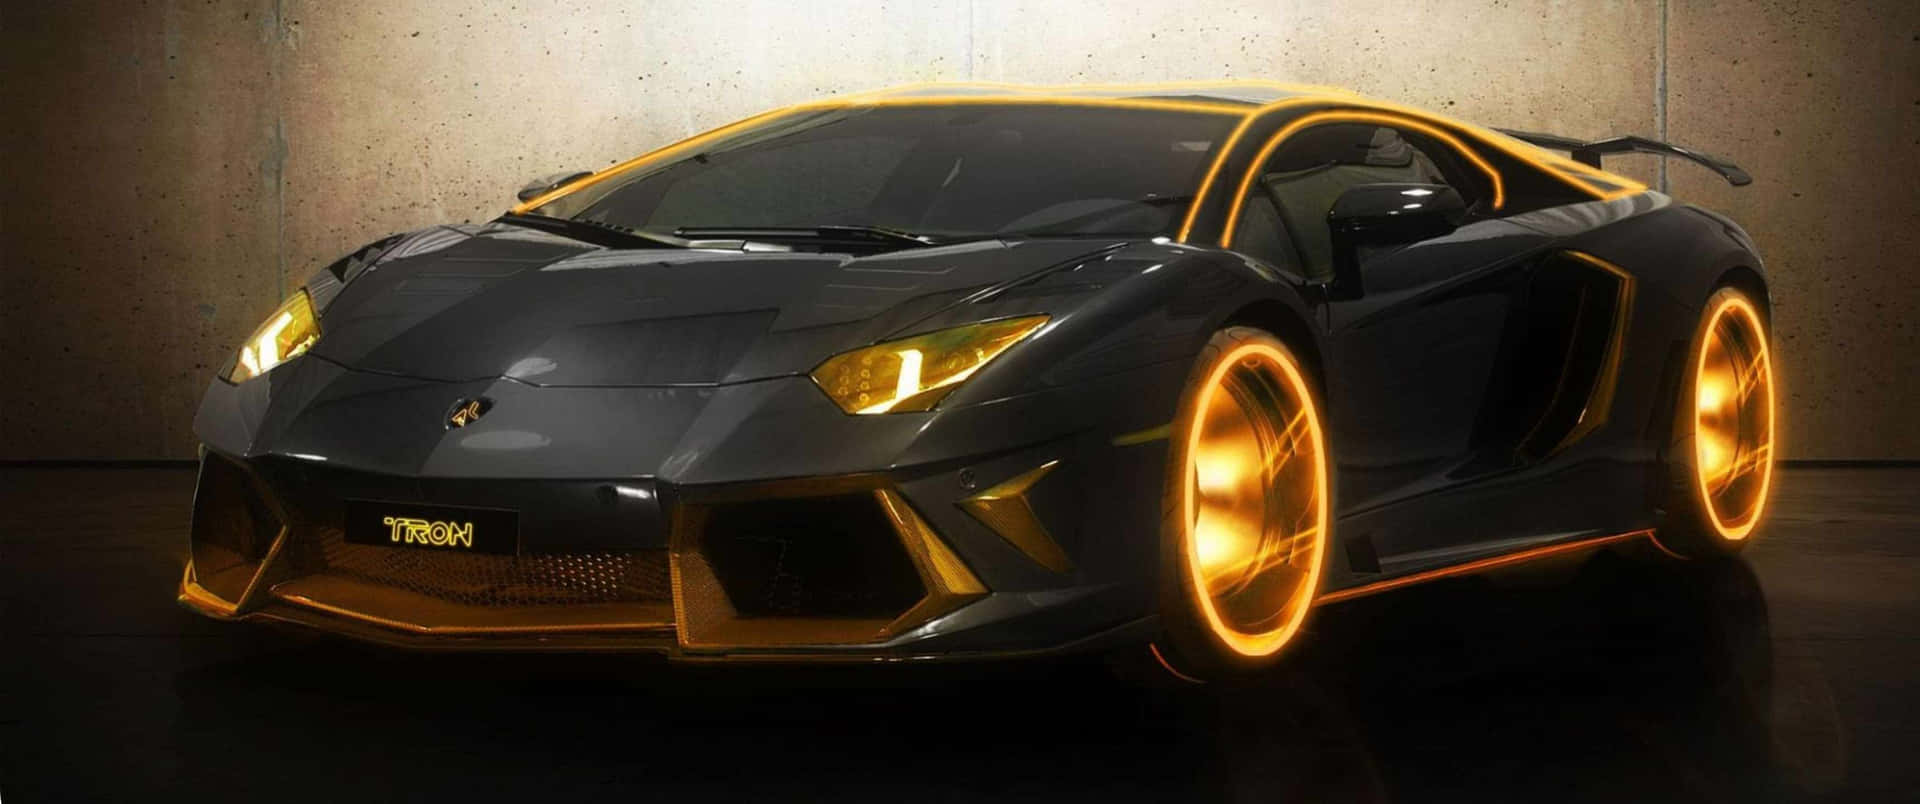 Velocitàe Stile: Vivi La Vita Veloce Con Questa Lussuosa Lamborghini.